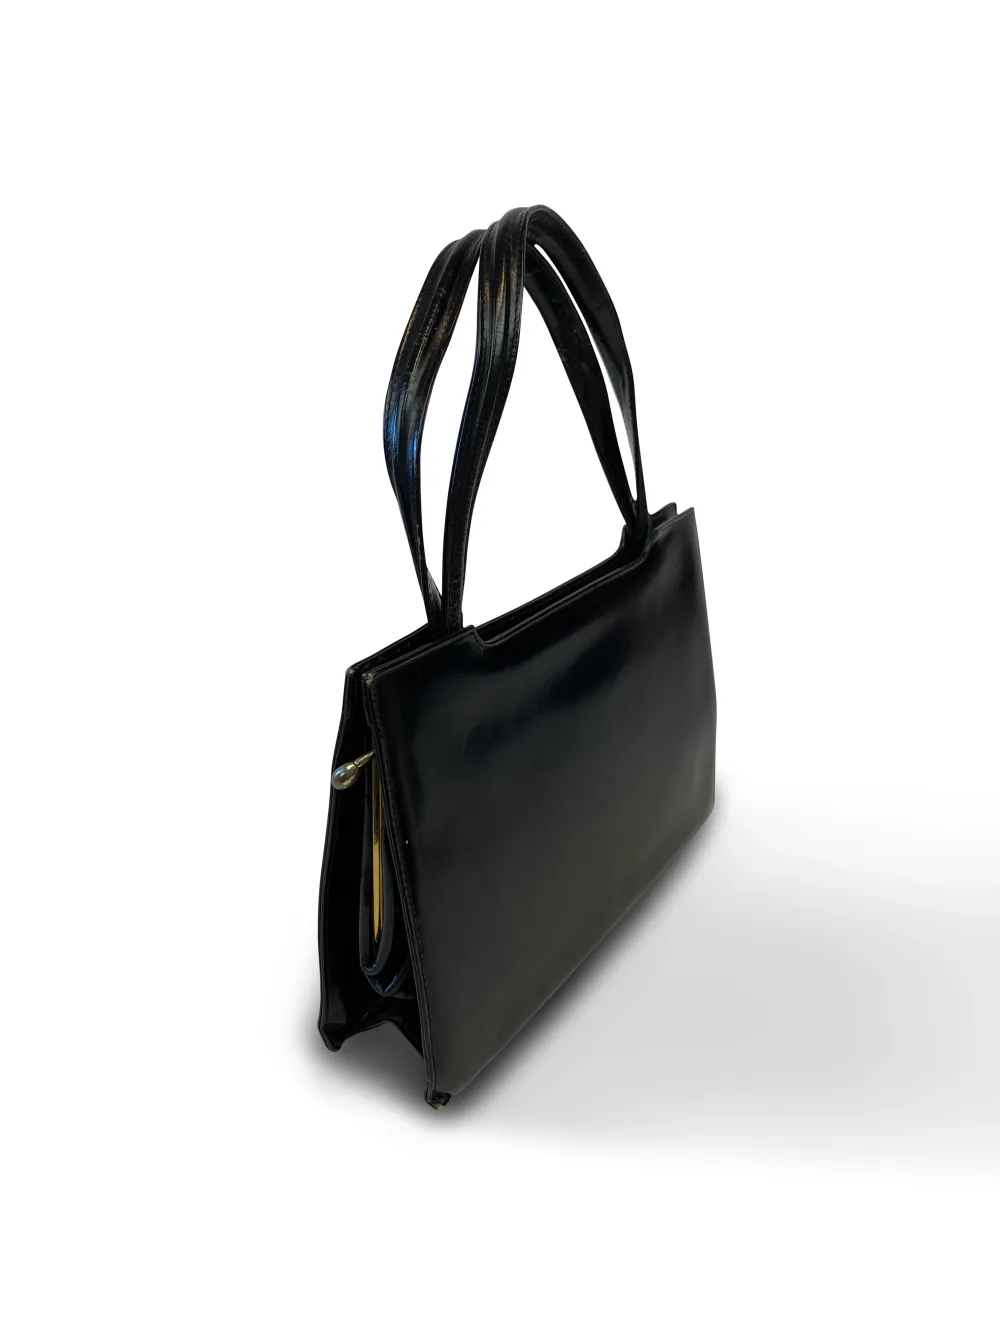 50's Leather Handbag  -Black Leather -Excellent Condition -One Size  Measurements -Width: 27cm -Depth: 7cm -Height: 18cm. Väskor.